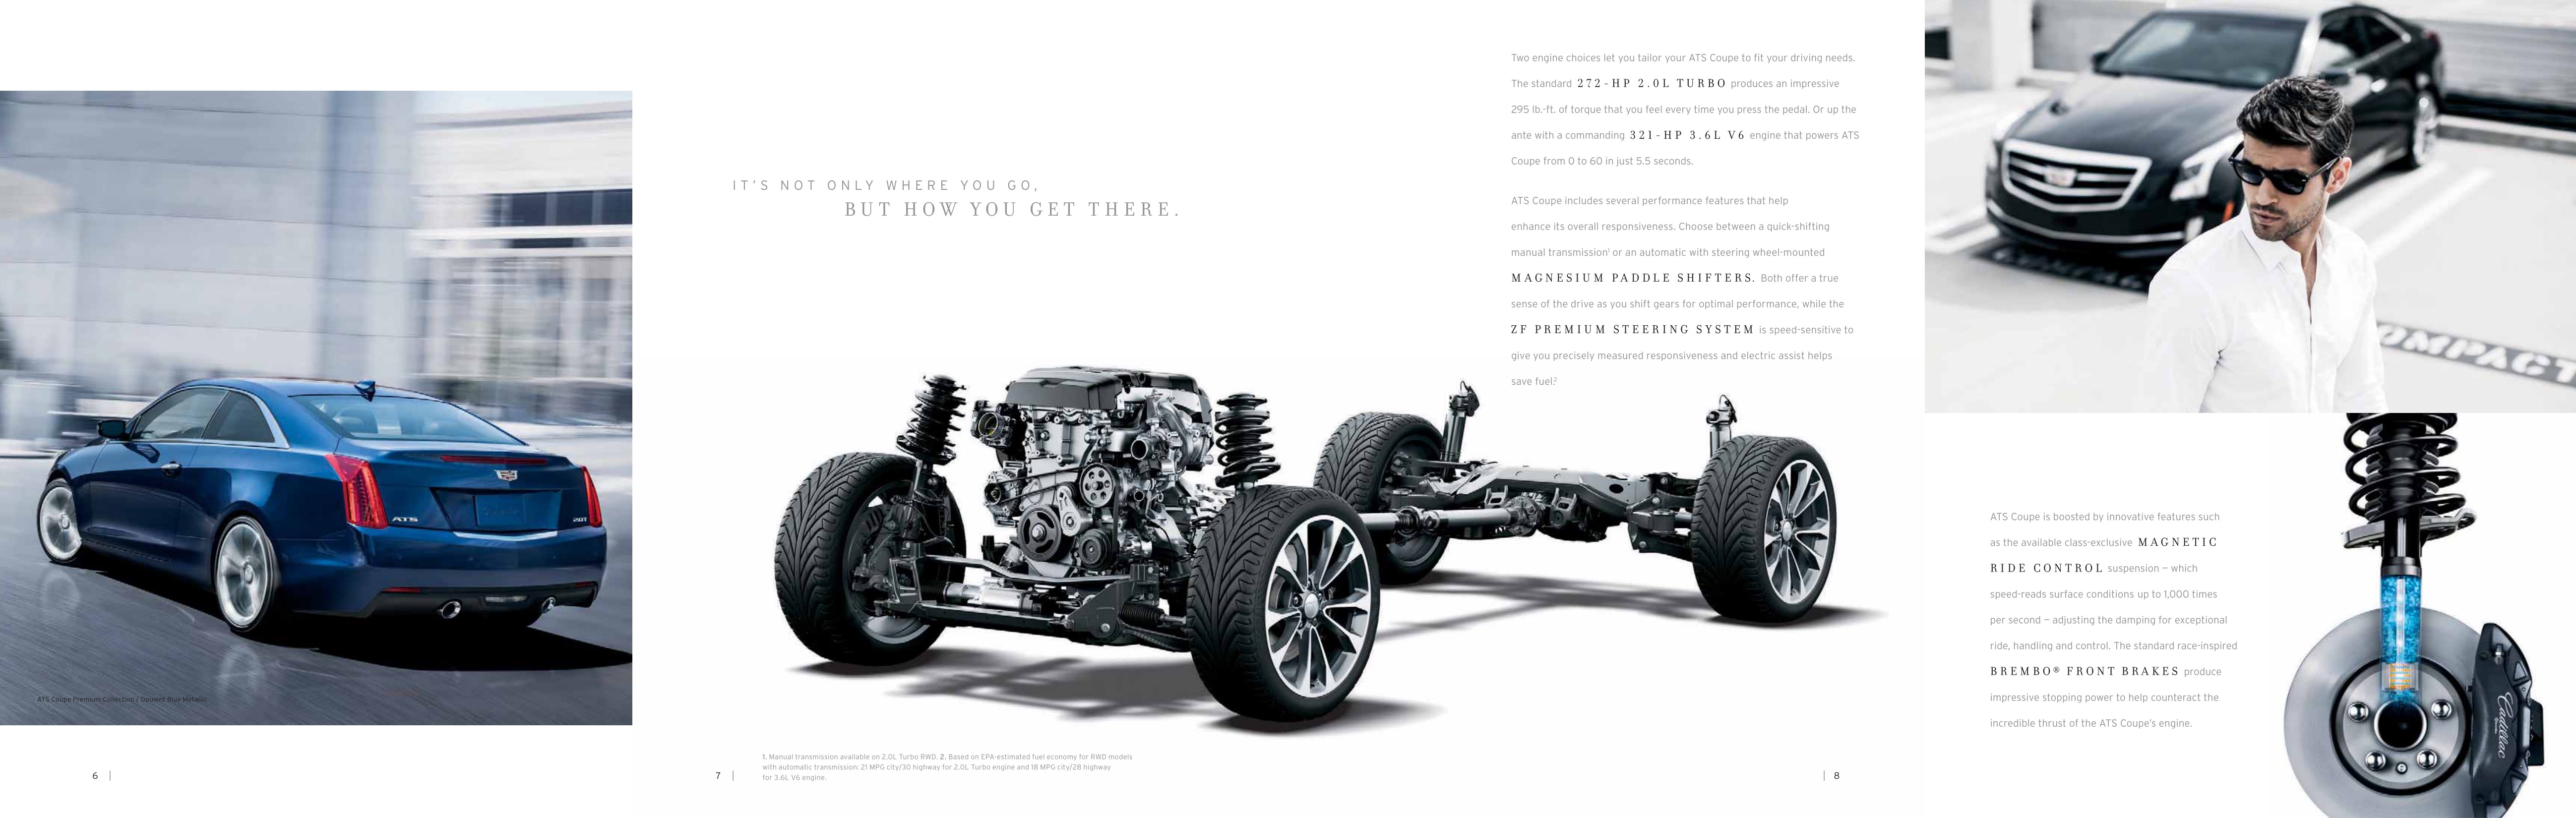 2015 Cadillac ATS Brochure Page 5